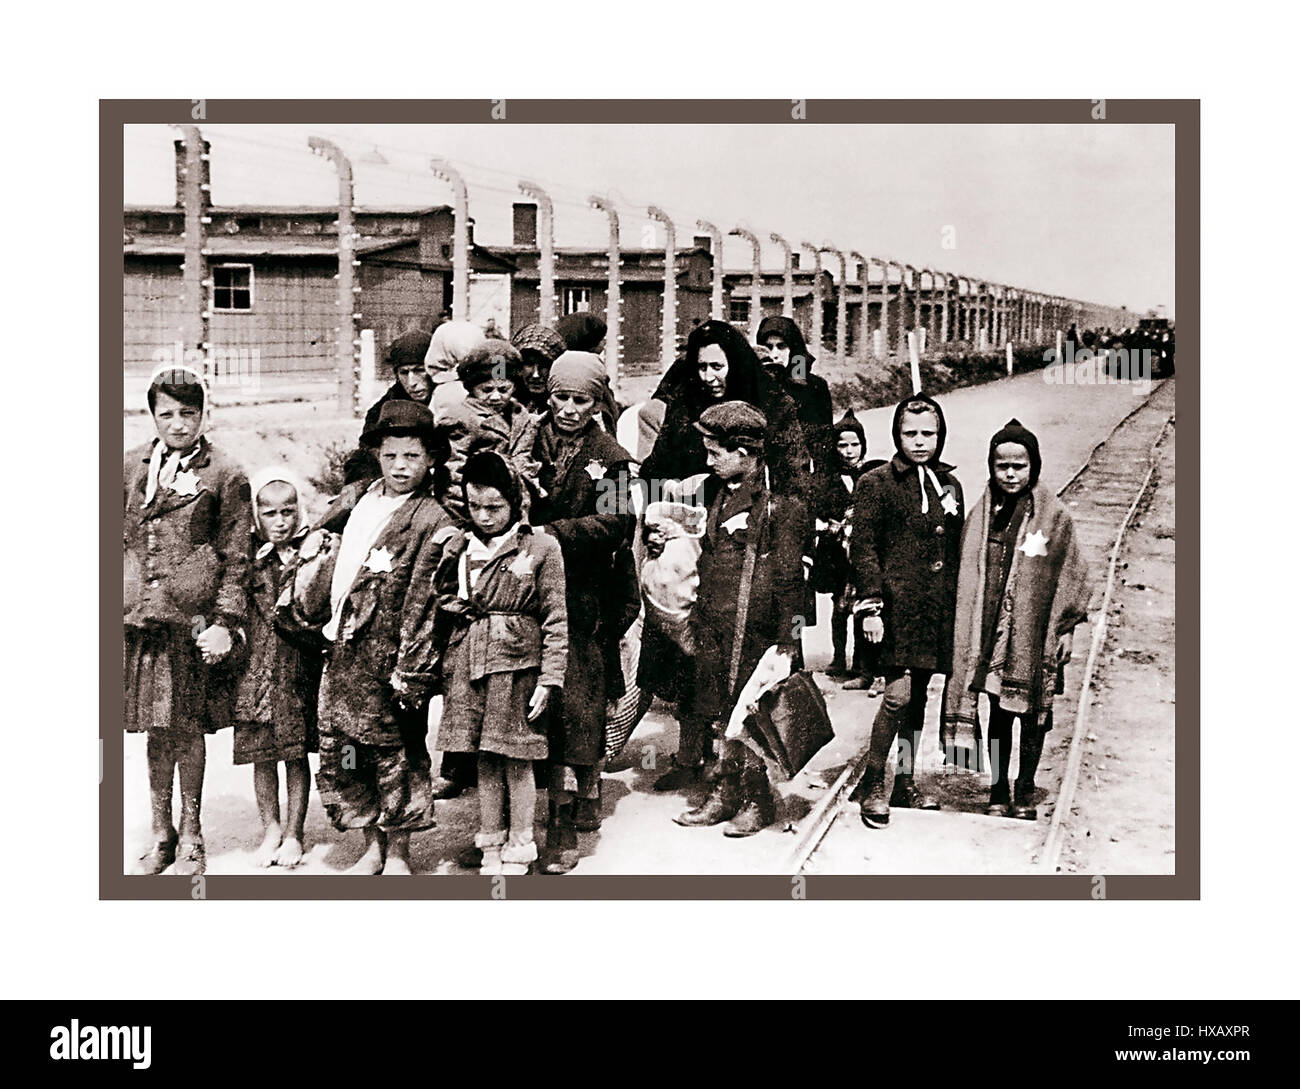 Auschwitz-Birkenau. I bambini ebrei che indossano le stelle gialle designate dai nazisti arrivano ad Auschwitz-Birkenau. Un campo di concentramento e sterminio nazista del WW2. I bambini ebrei hanno costituito il gruppo più grande di coloro che sono stati deportati nel campo. Sono stati inviati lì insieme agli adulti, a partire dall'inizio del 1942, come parte della "soluzione finale della questione ebraica" La distruzione totale della popolazione ebraica d'Europa...il campo di concentramento di Auschwitz era una rete di campi di concentramento e di sterminio nazisti costruiti e gestiti dal terzo Reich nelle aree polacche annesse dalla Germania nazista nel WW2 Foto Stock